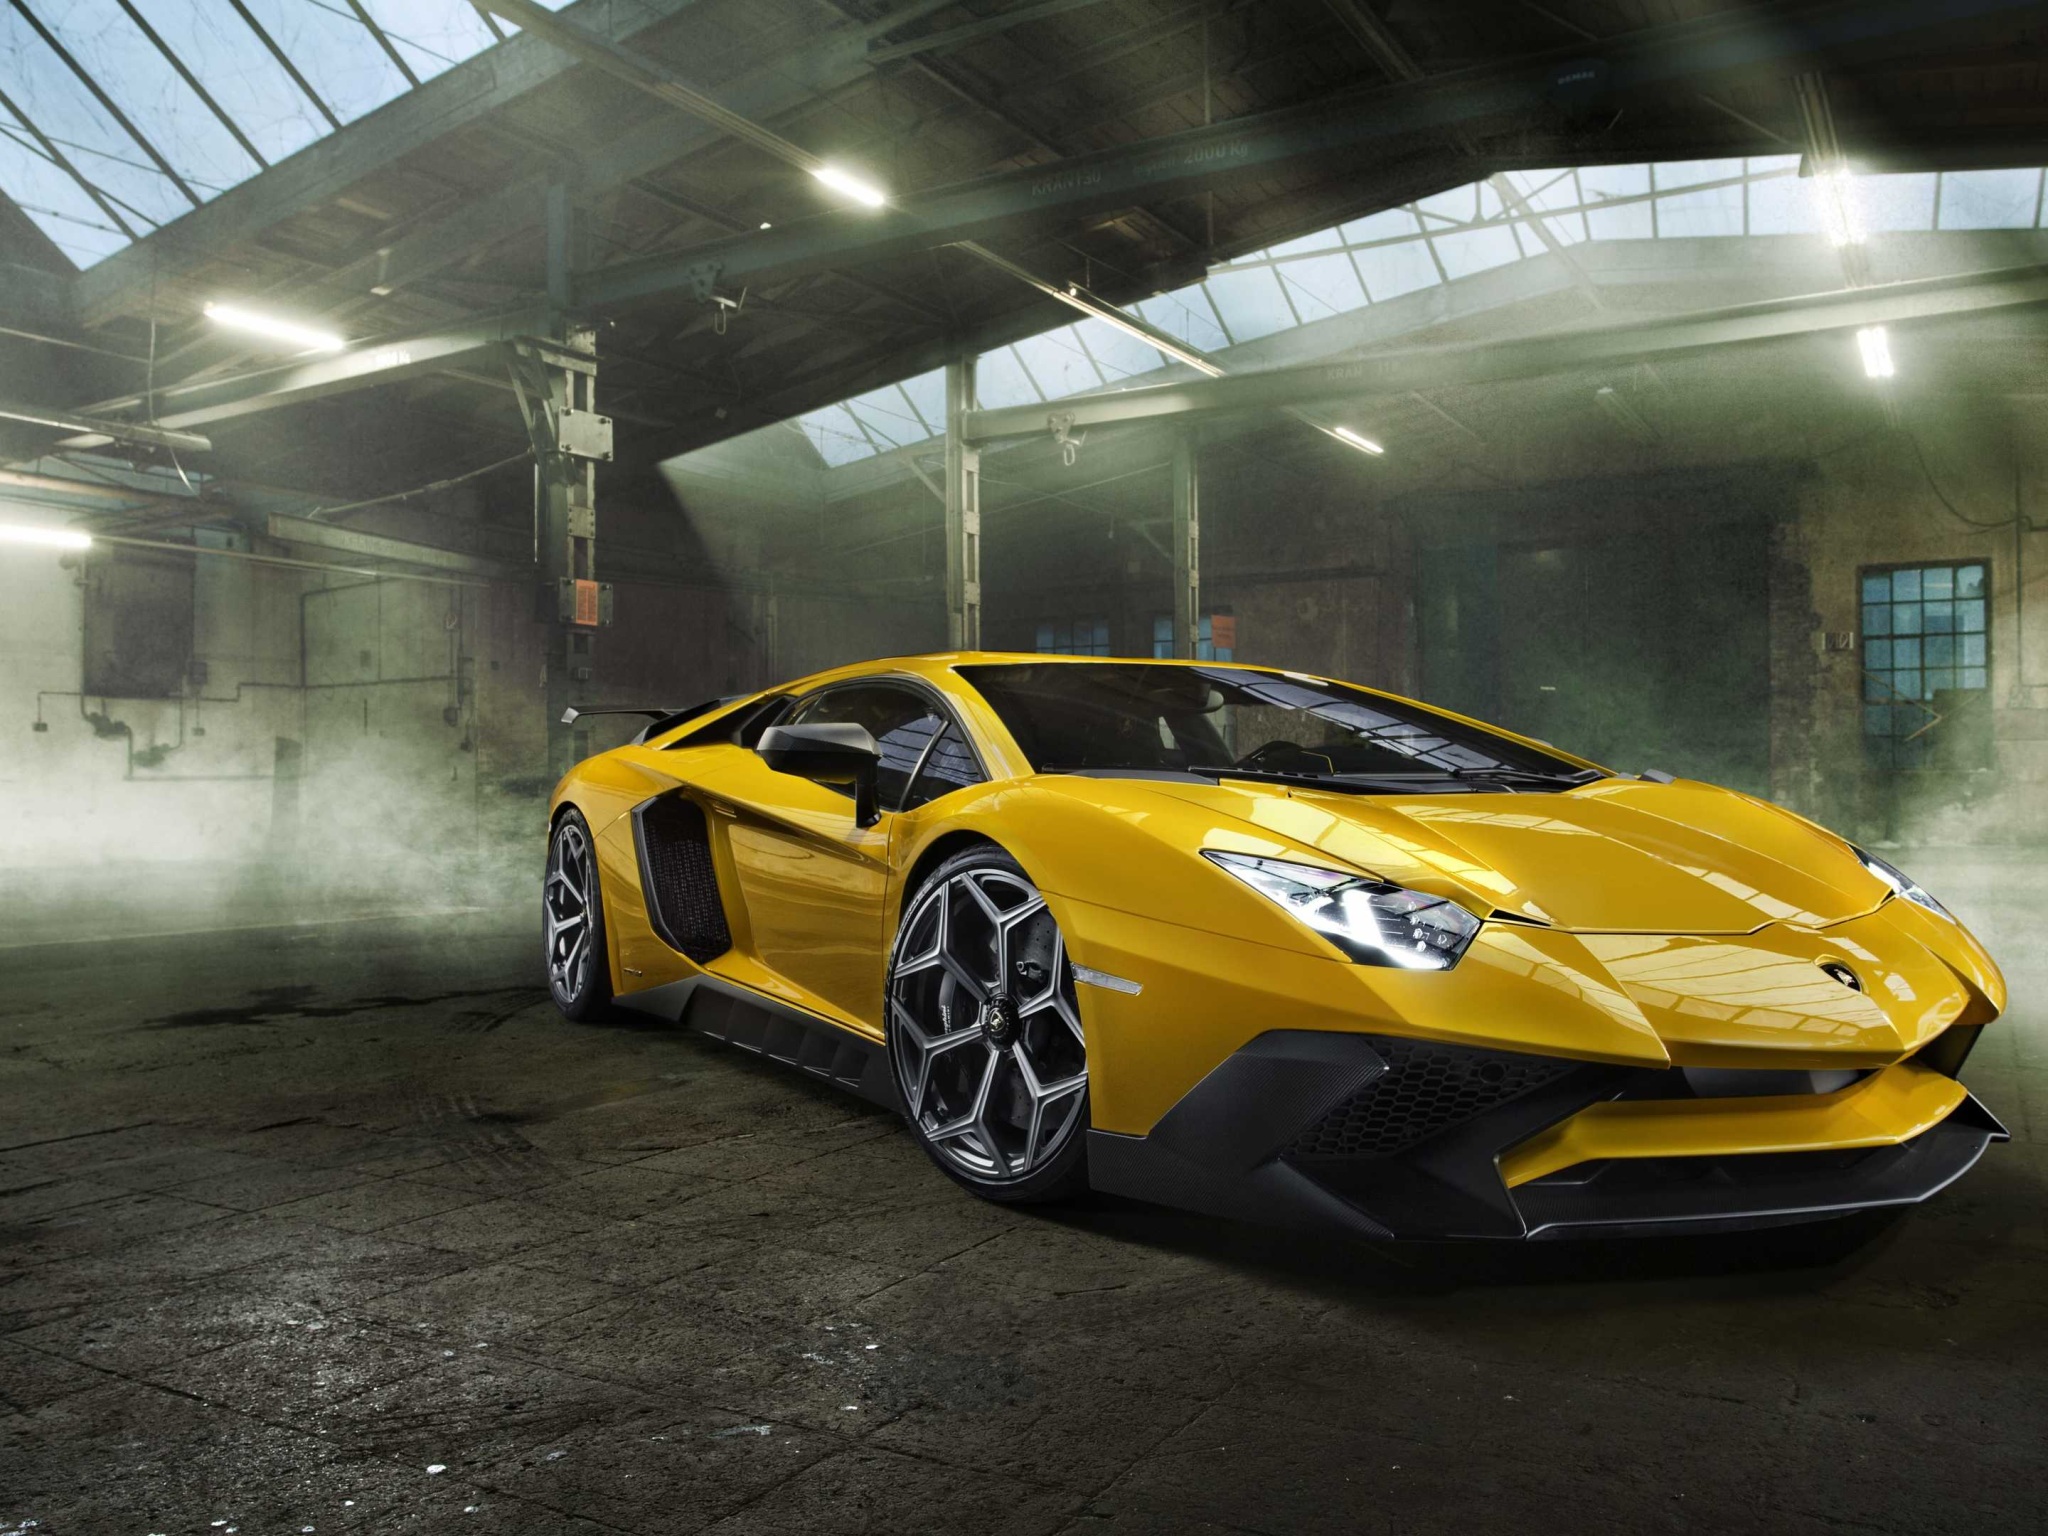 Siêu xe Lamborghini Aventador đẳng cấp, tốc độ siêu nhanh và kiểu dáng hoàn hảo. Hãy xem hình ảnh của em nó để cảm nhận được vẻ đẹp hoàn mỹ của siêu phẩm này.